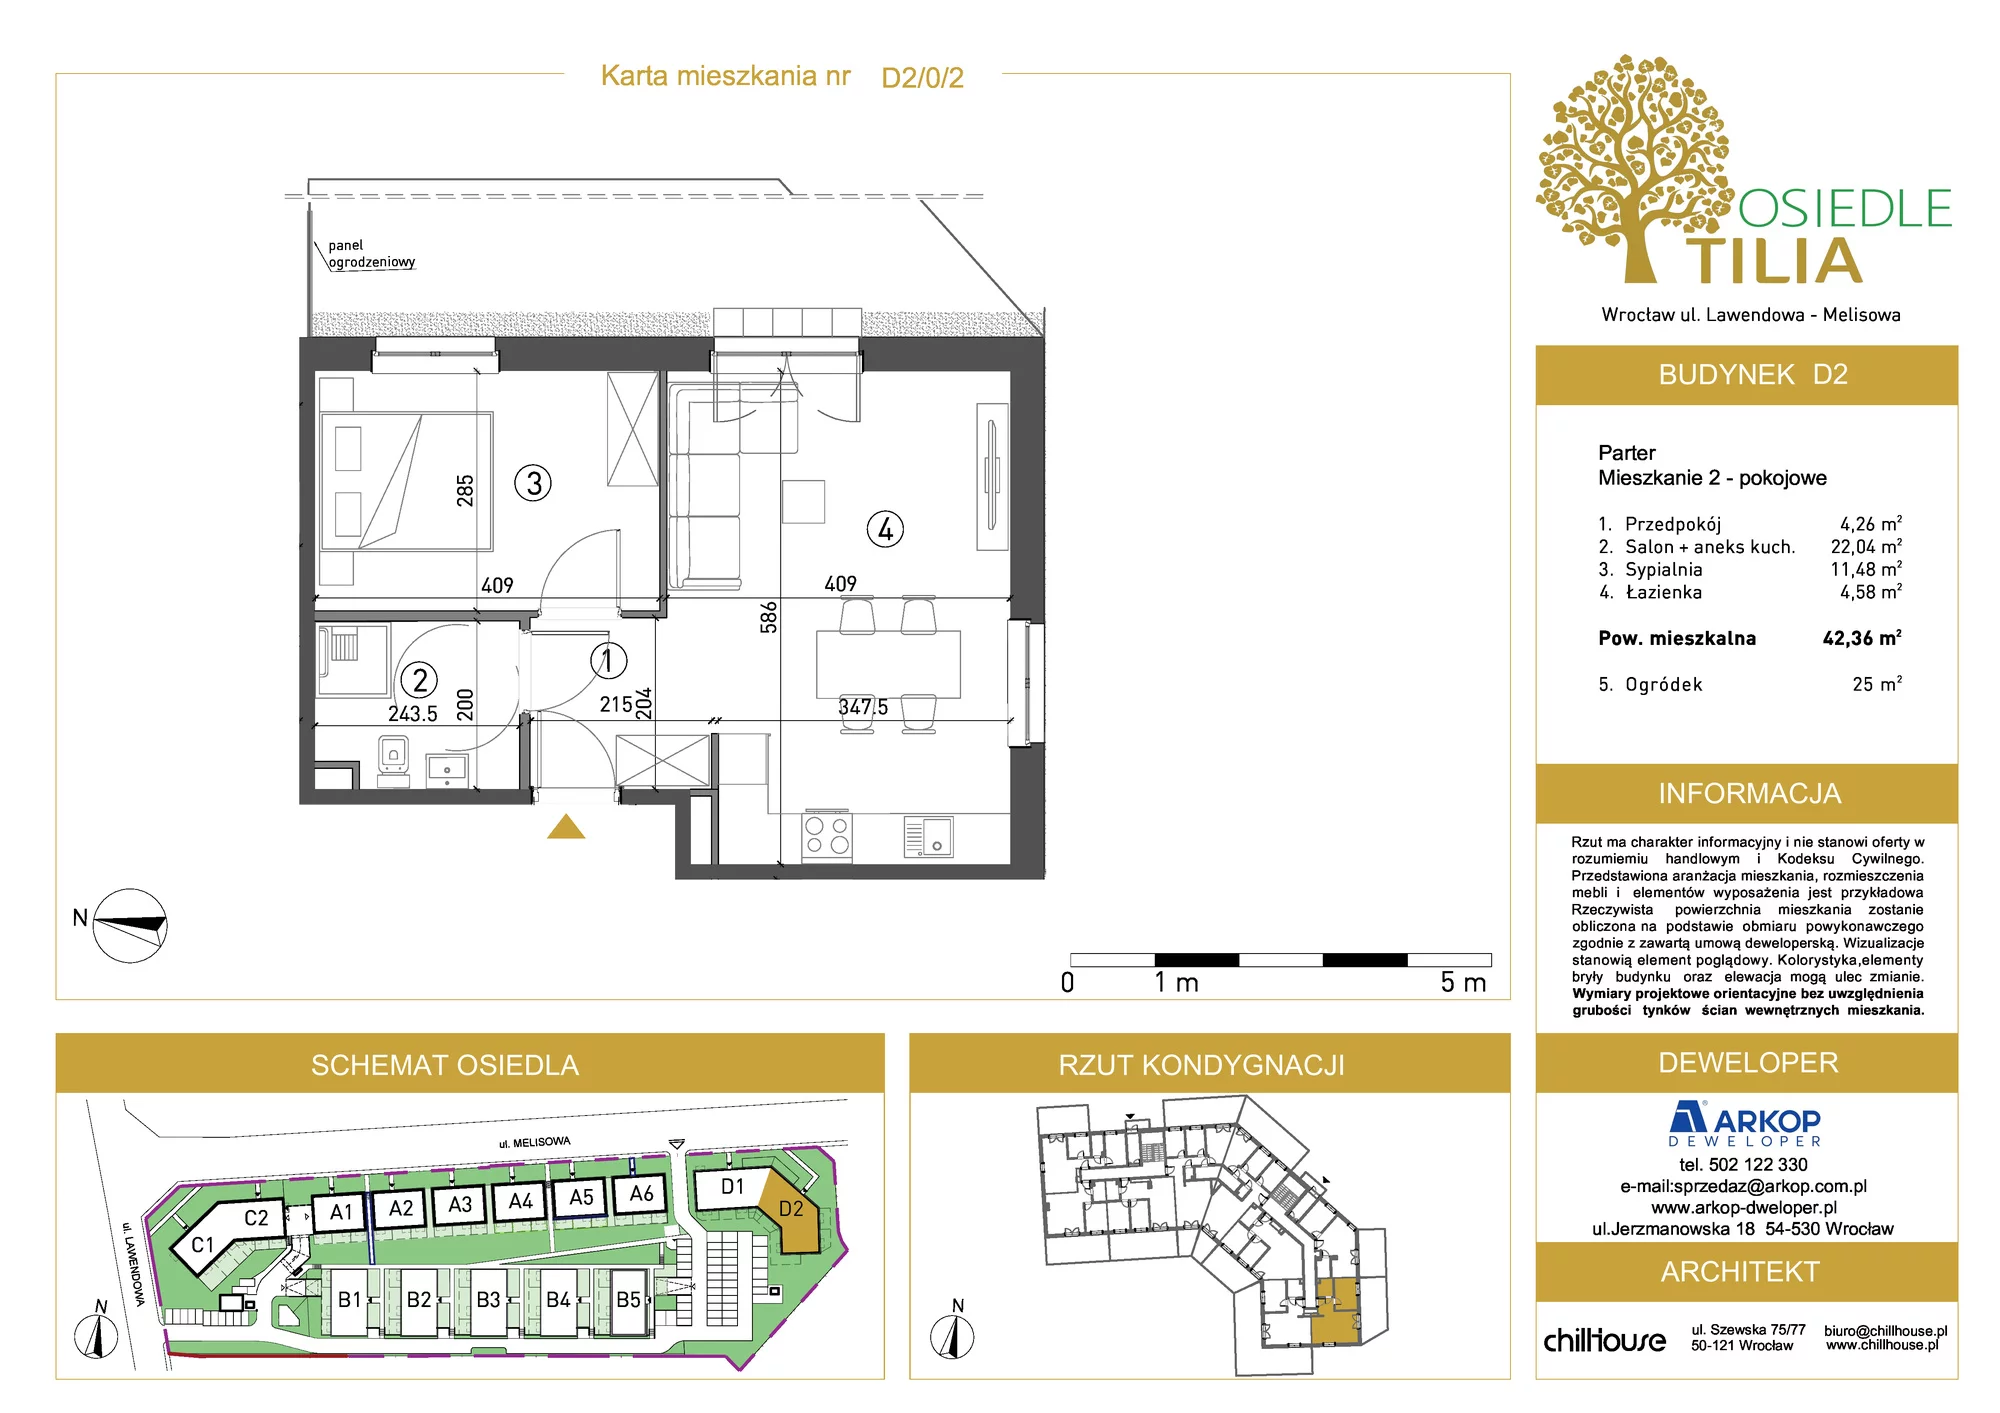 Mieszkanie 42,36 m², parter, oferta nr D2/0/2, Osiedle Tilia, Wrocław, Lipa Piotrowska, Psie Pole, ul. Lawendowa/Melisowa